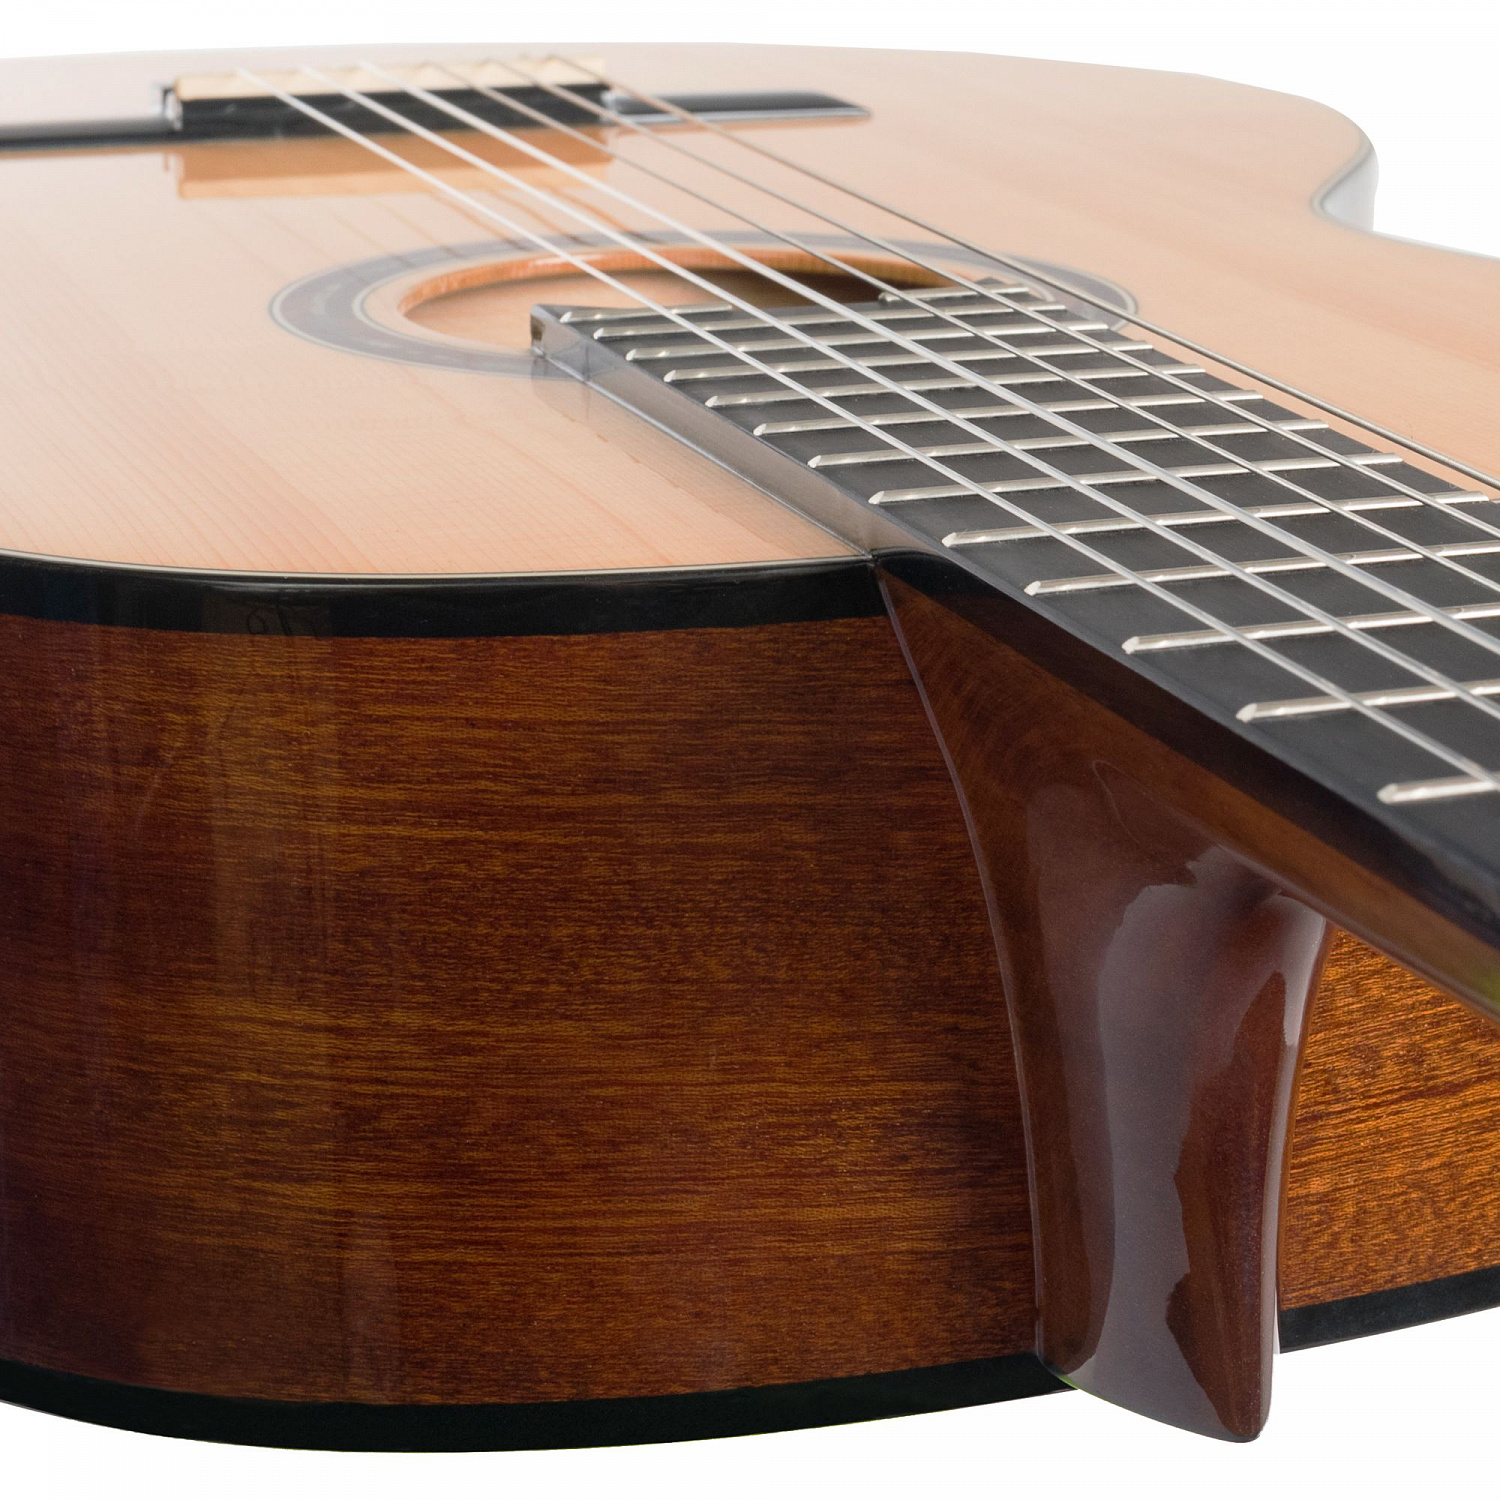 Rockdale Classic C10  классическая гитара, цвет натуральный